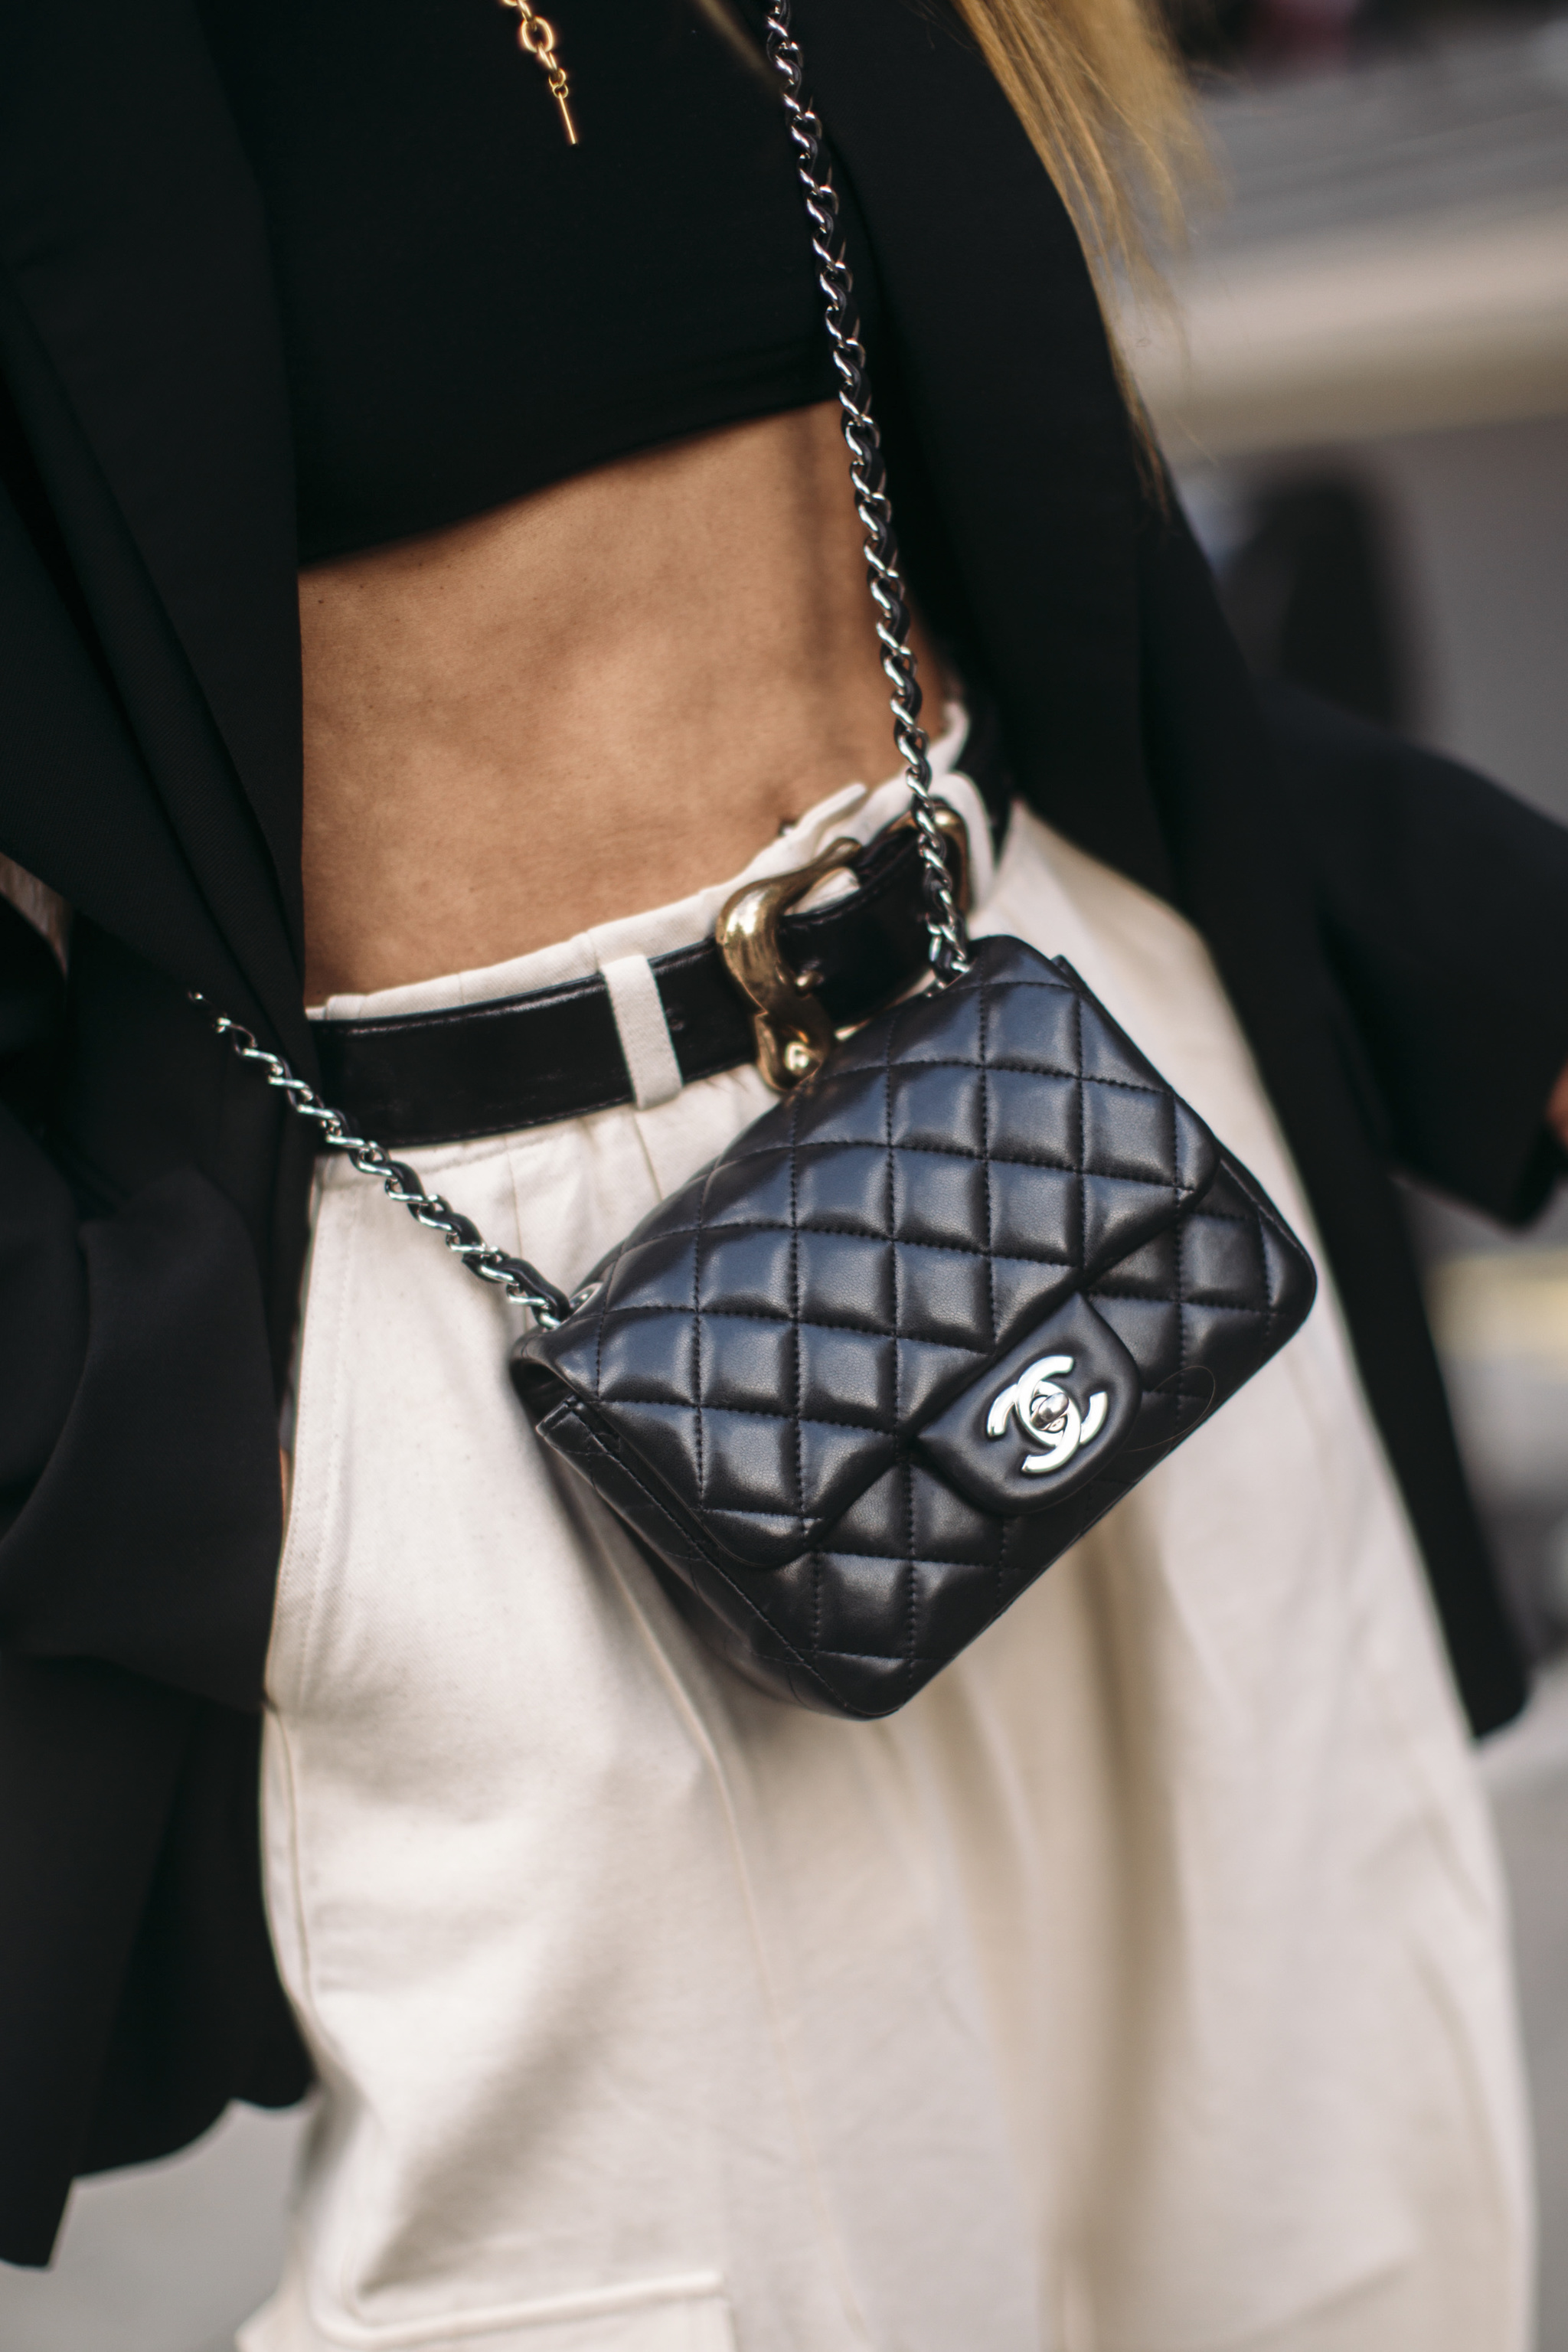 Top 9 túi xách Chanel chính hãng đẹp nhất dành cho phái đẹp